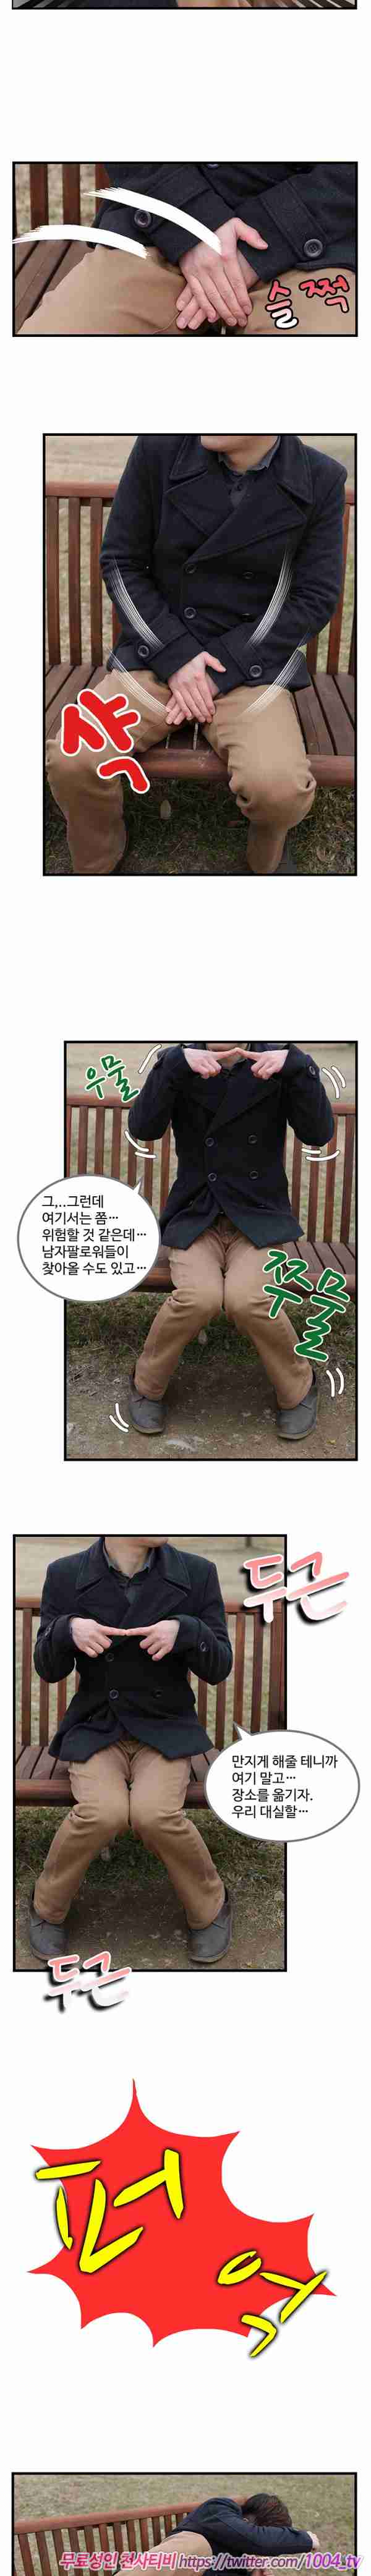 [韩国漫画]ID0026 韩国真人漫画27.rar--性感提示：宽衣解带甜美猫女双手遮乳肉感